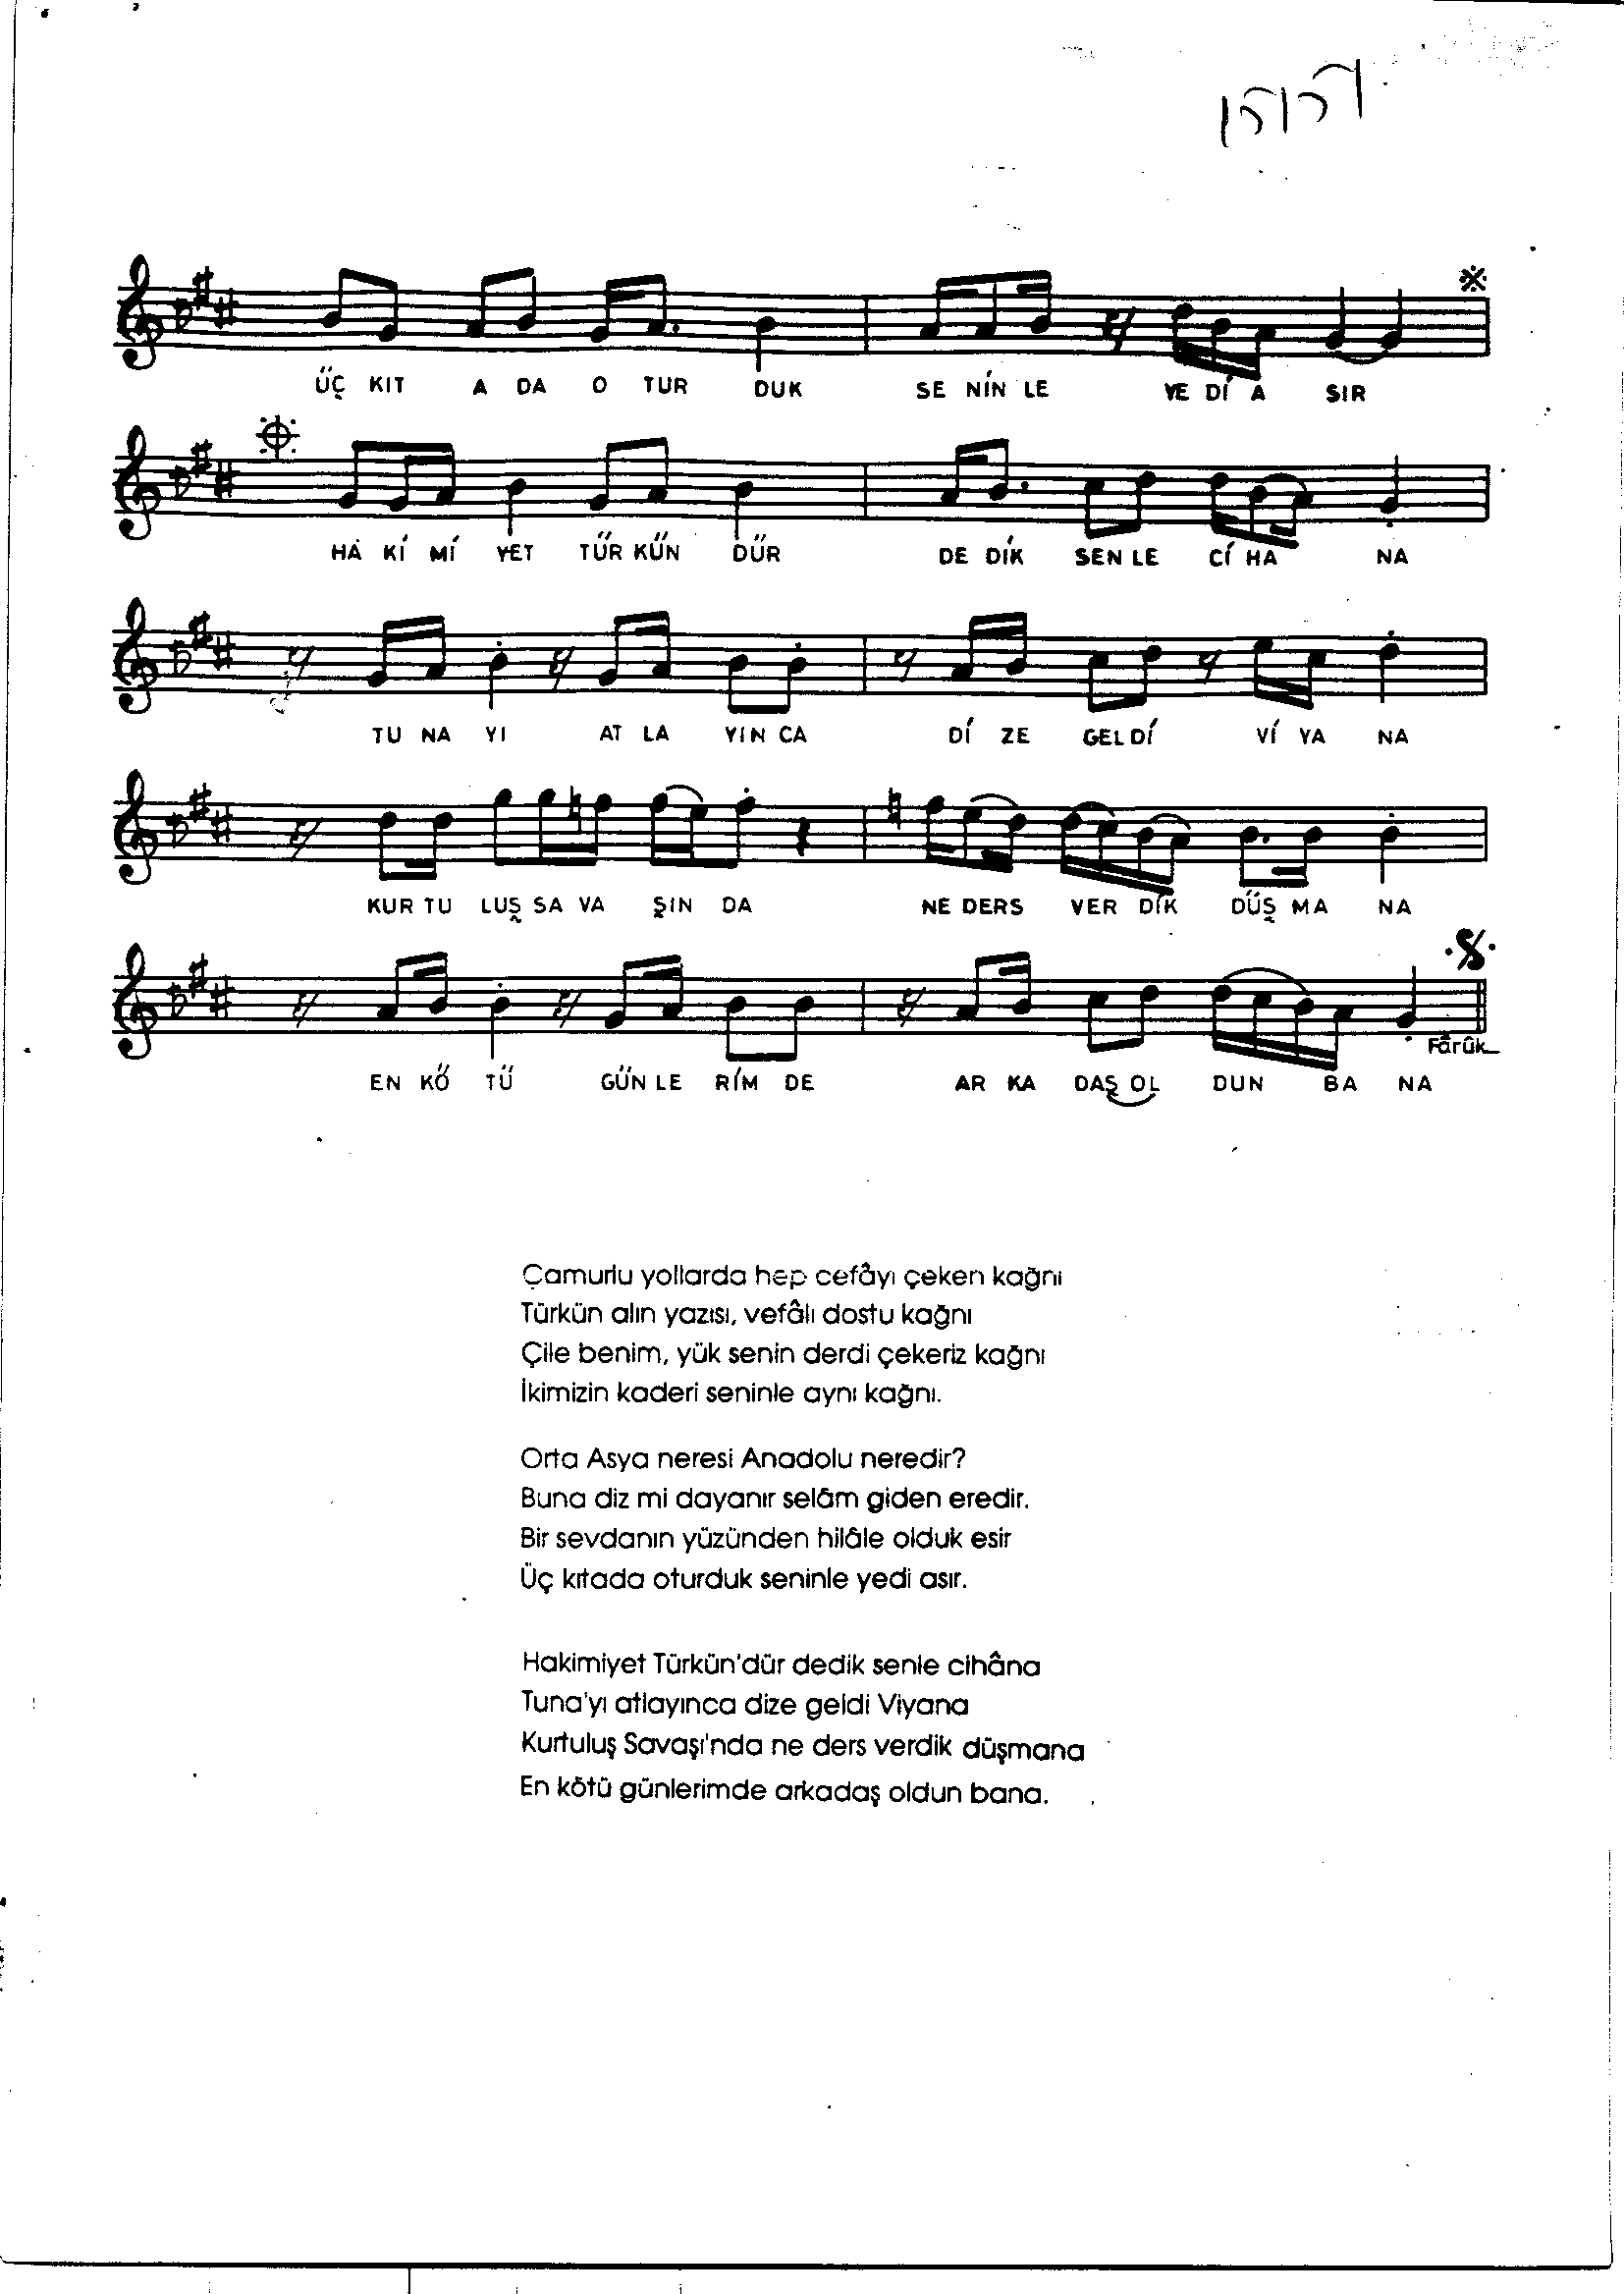 Nikrîz - Şarkı - Faruk Şahin - Sayfa 2